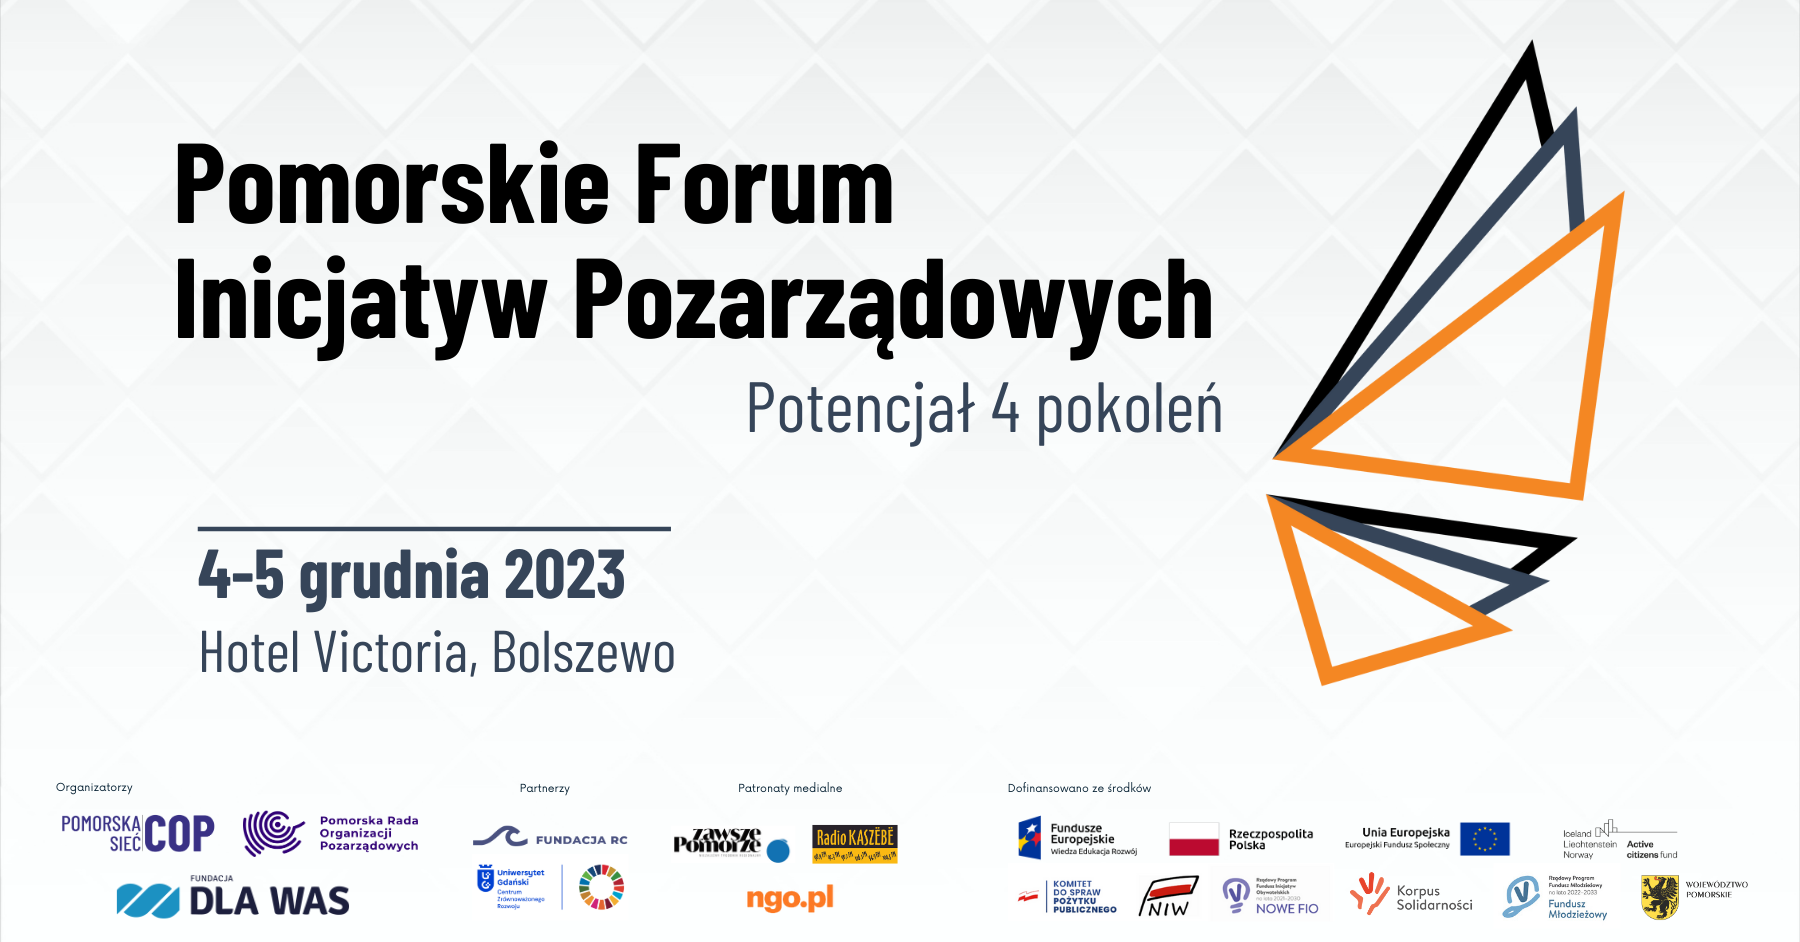 Pomorskie Forum Inicjatyw Pozarządowych 2023. Potencjał 4 pokoleń.